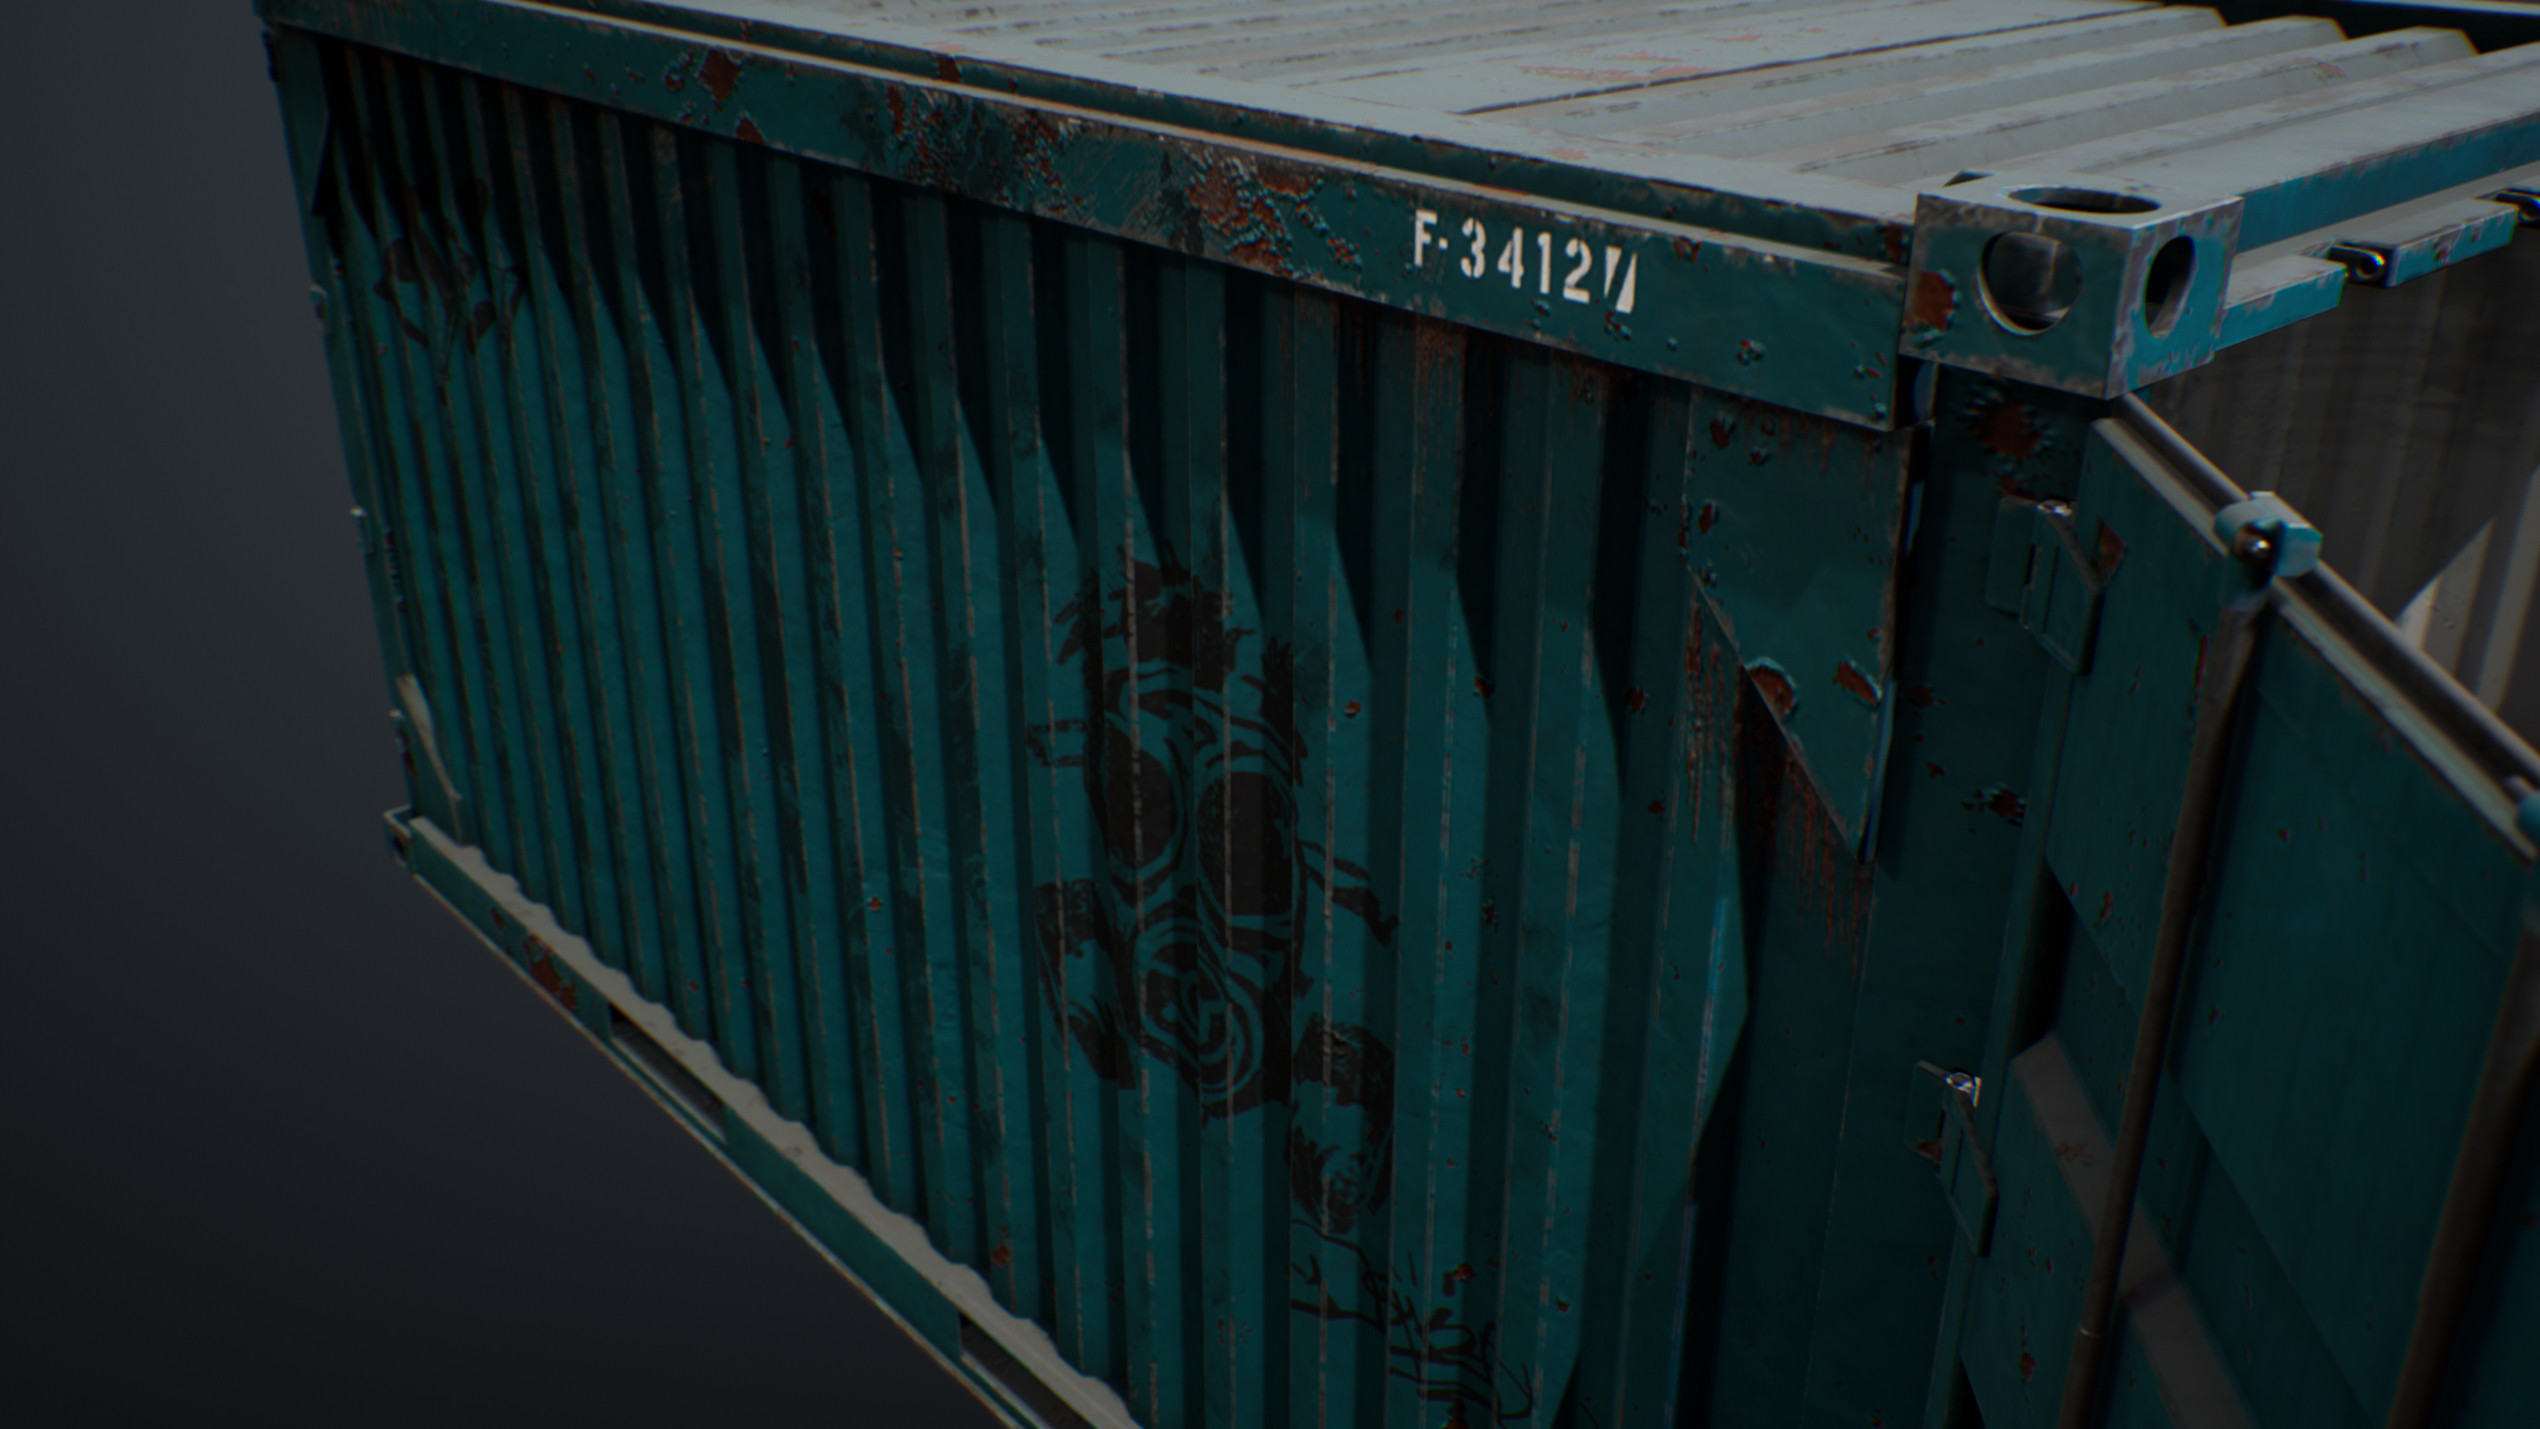 UE4 screenshot detailed shot of the container's opened door 2.